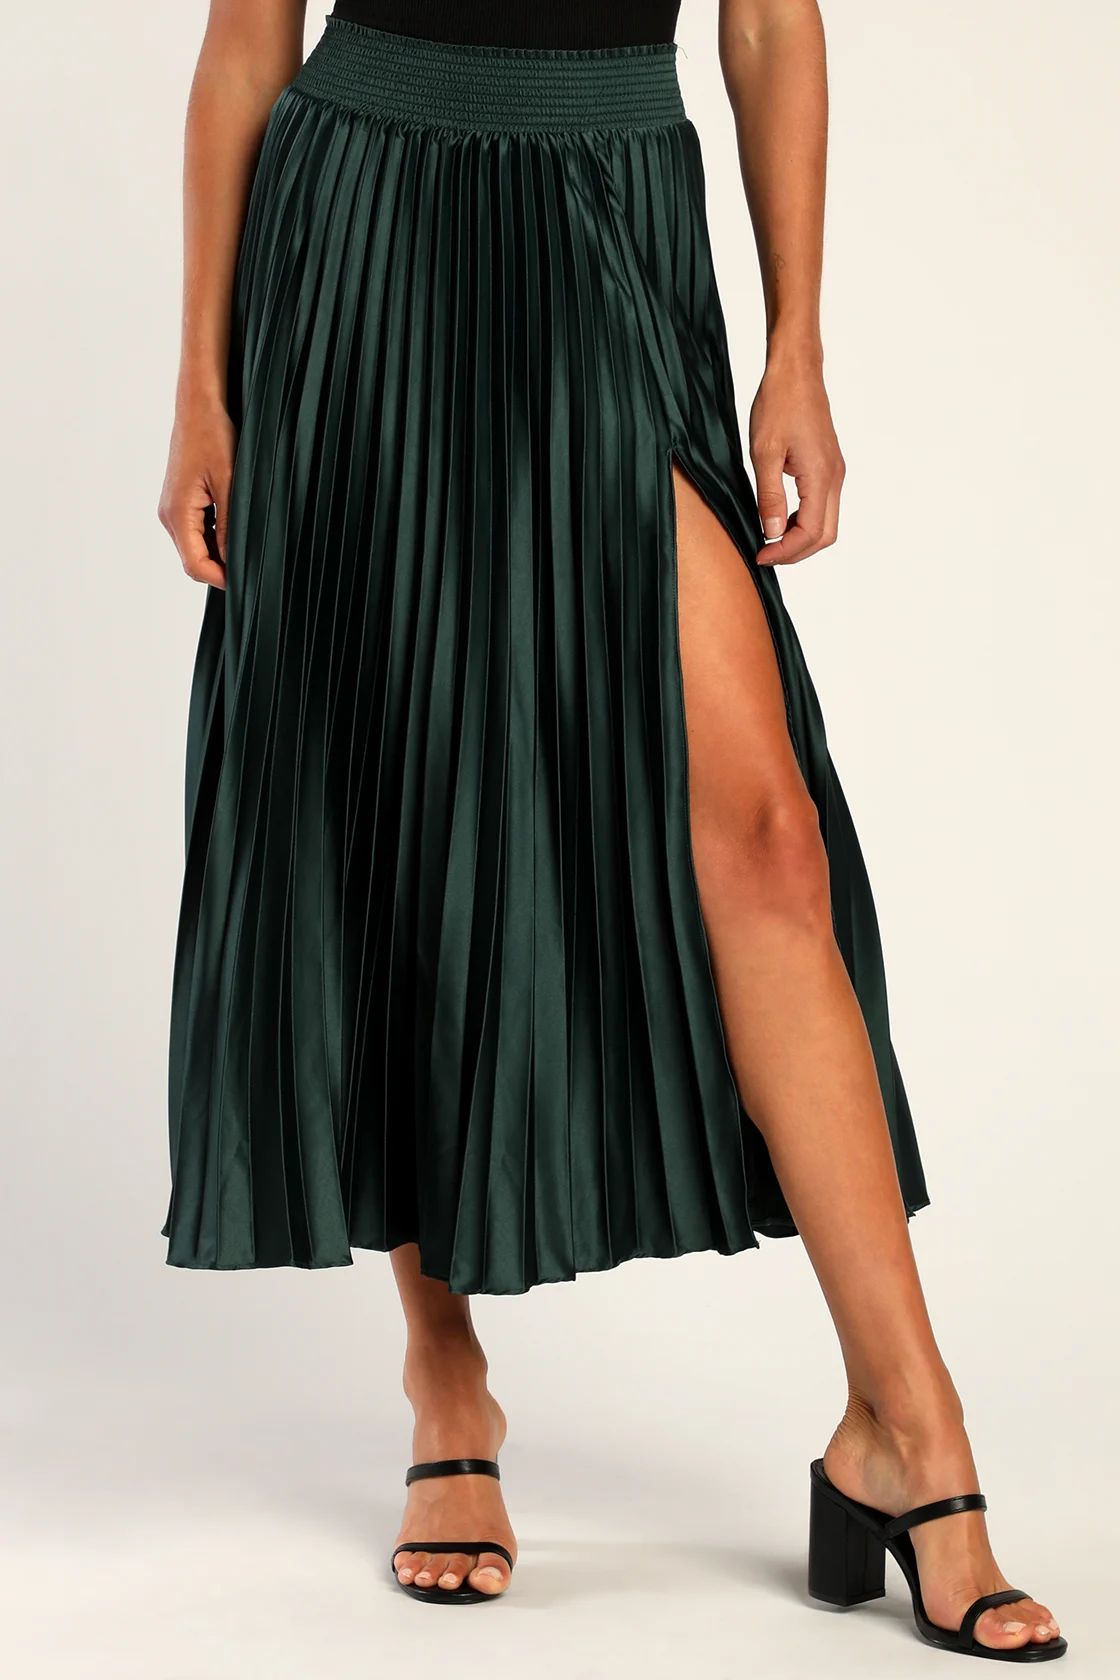 Sophisticated Vision Emerald Green Satin Pleated Midi Skirt | Lulus (US)